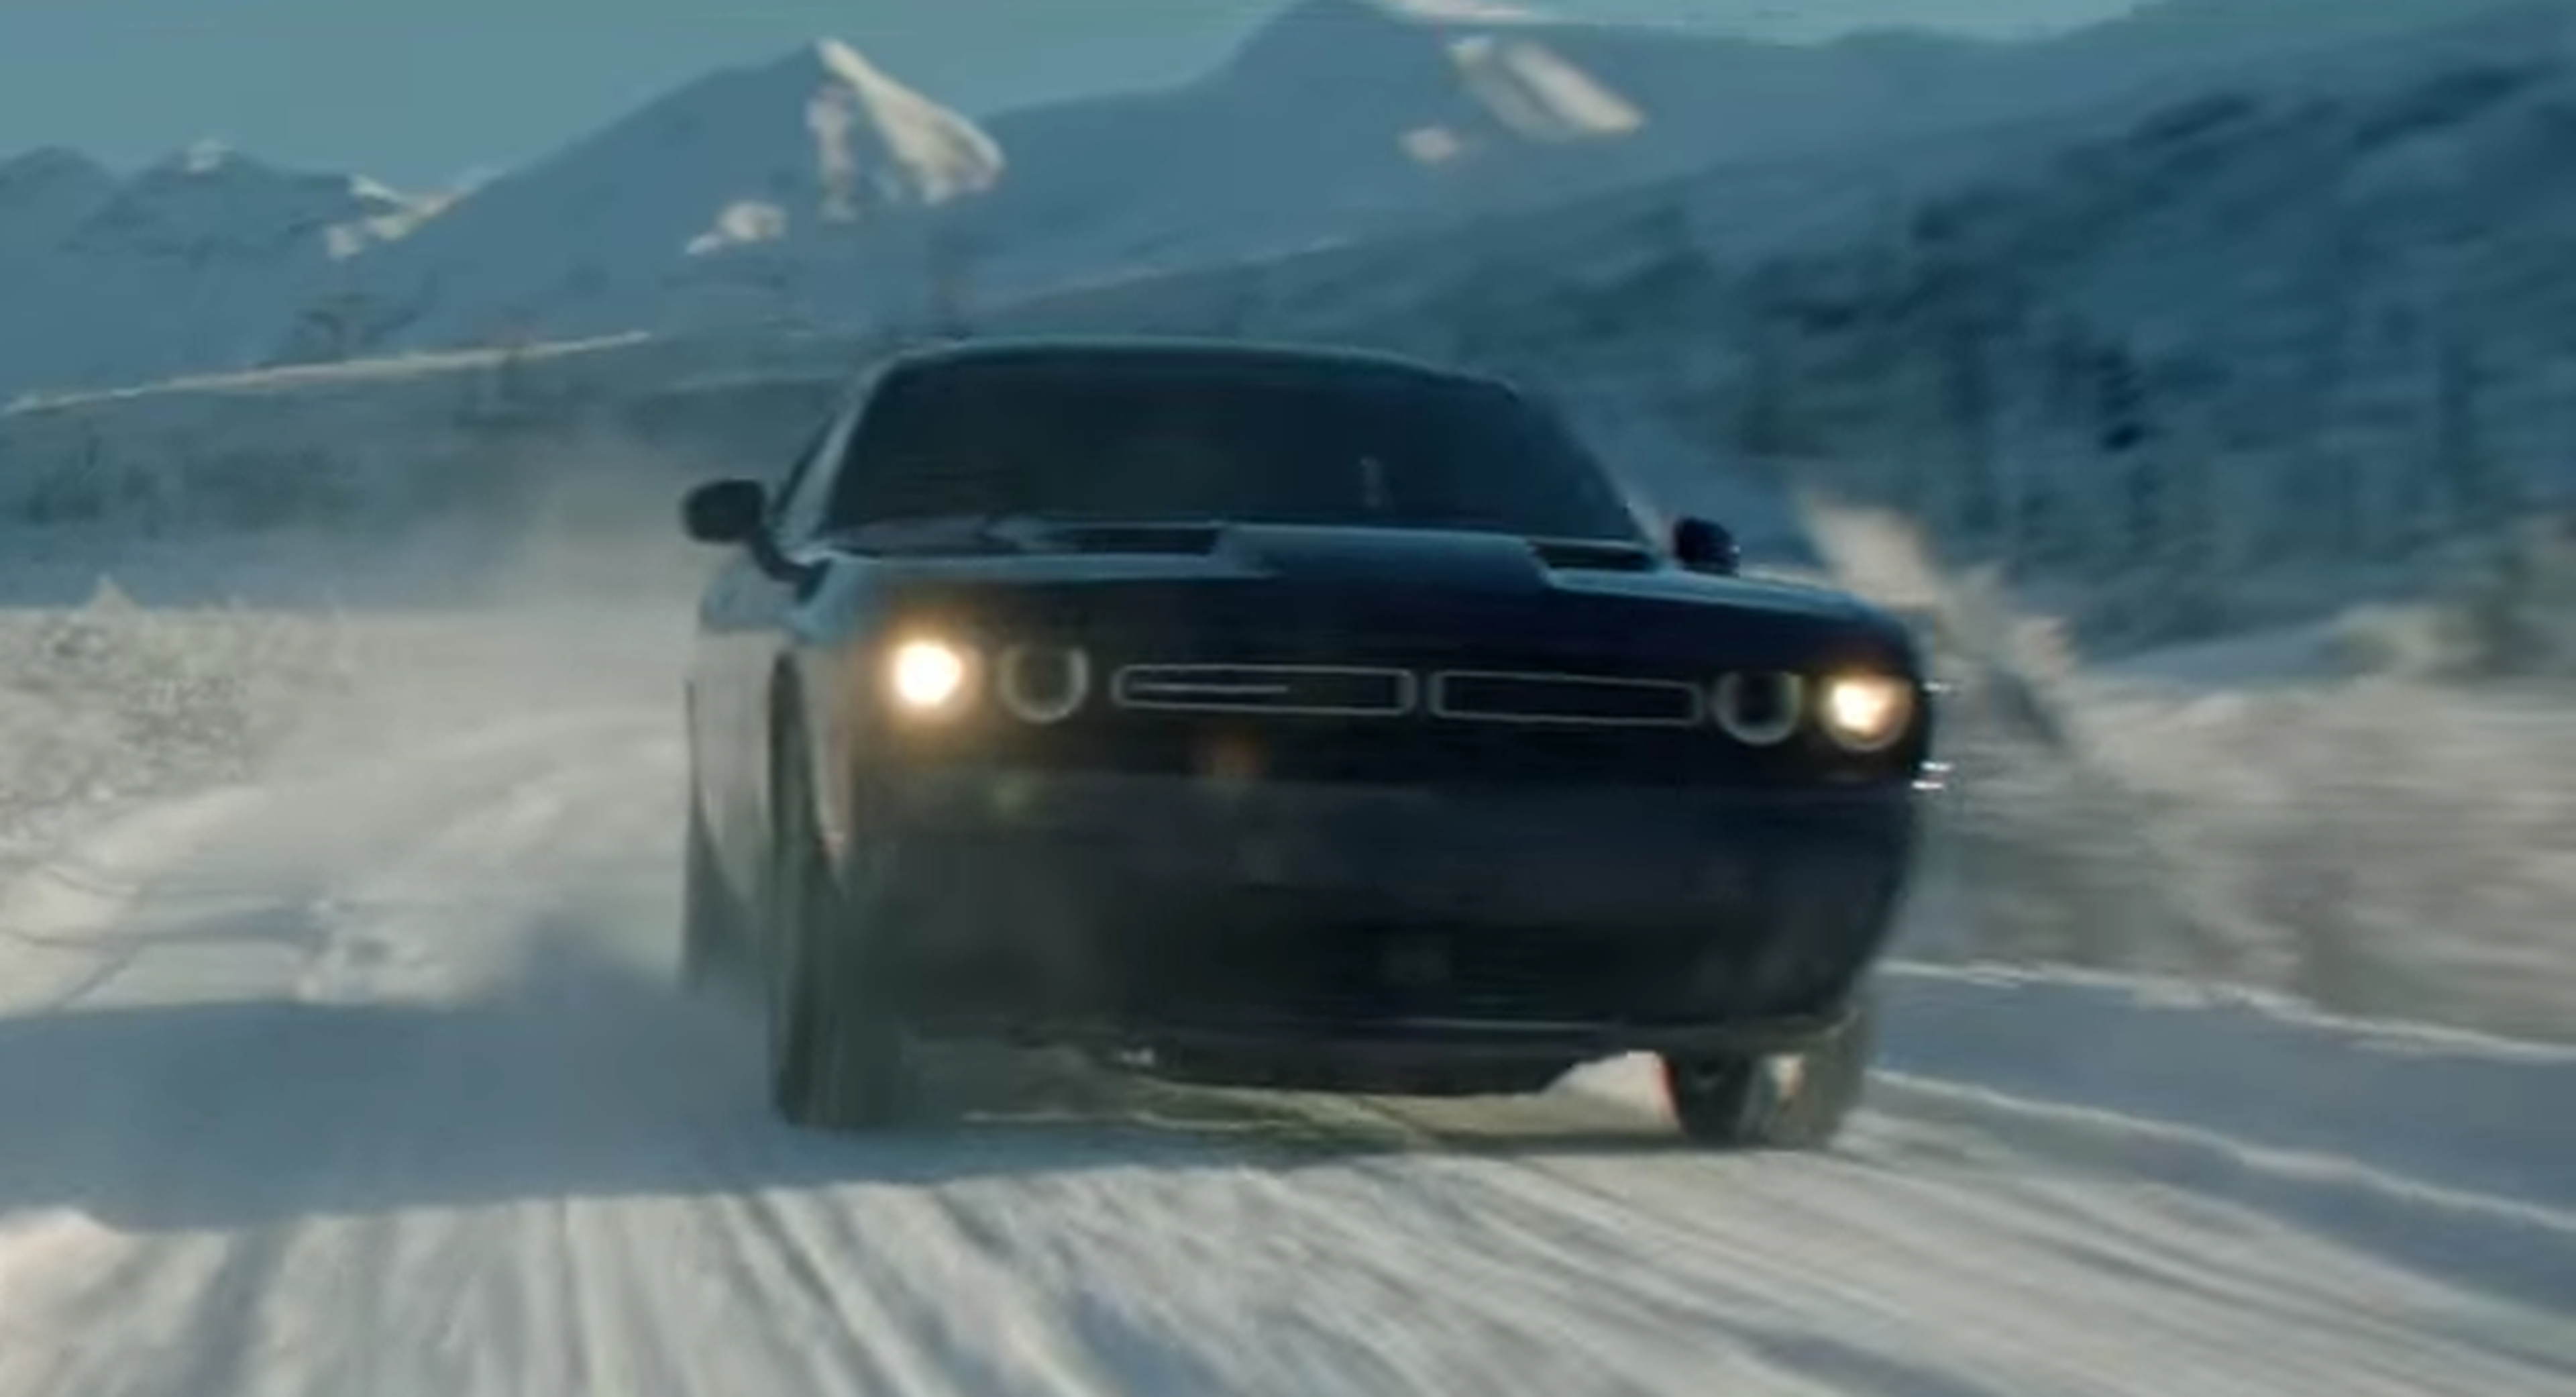 VÍDEO: Un Dodge con tracción total anda suelto... ¡En la nieve!